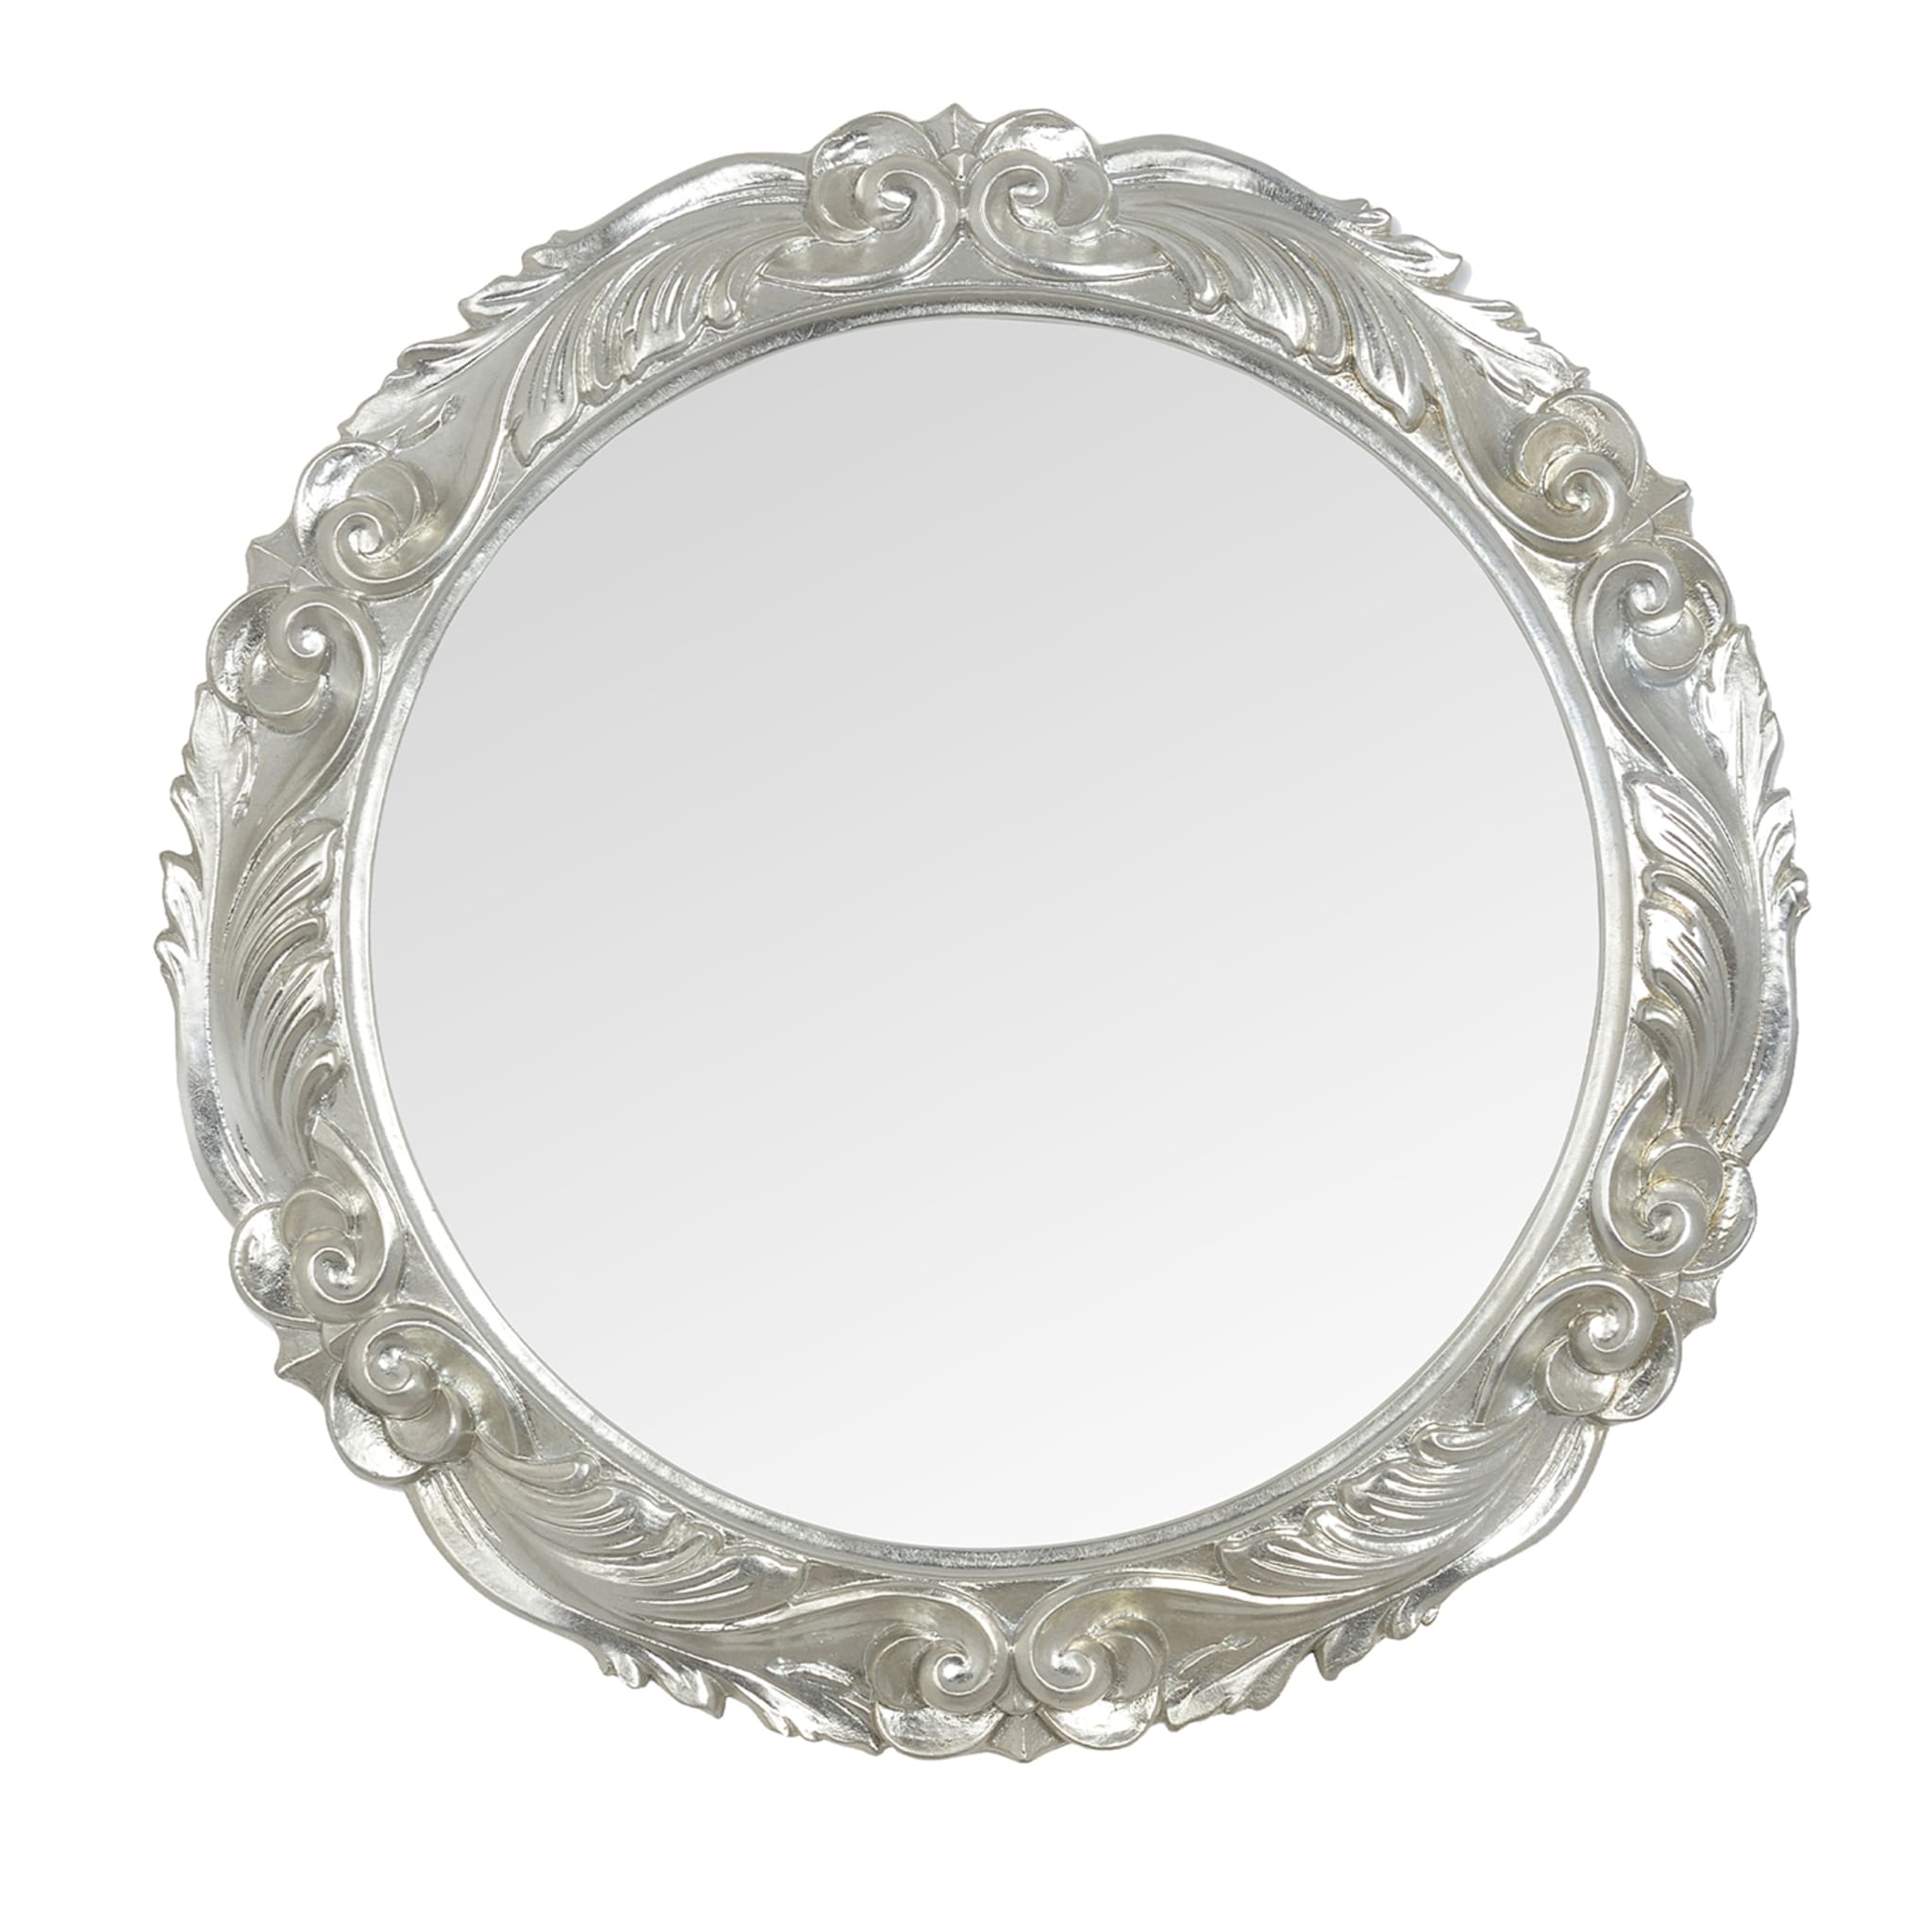 Dafne Circular Silver Wall Mirror - Main view